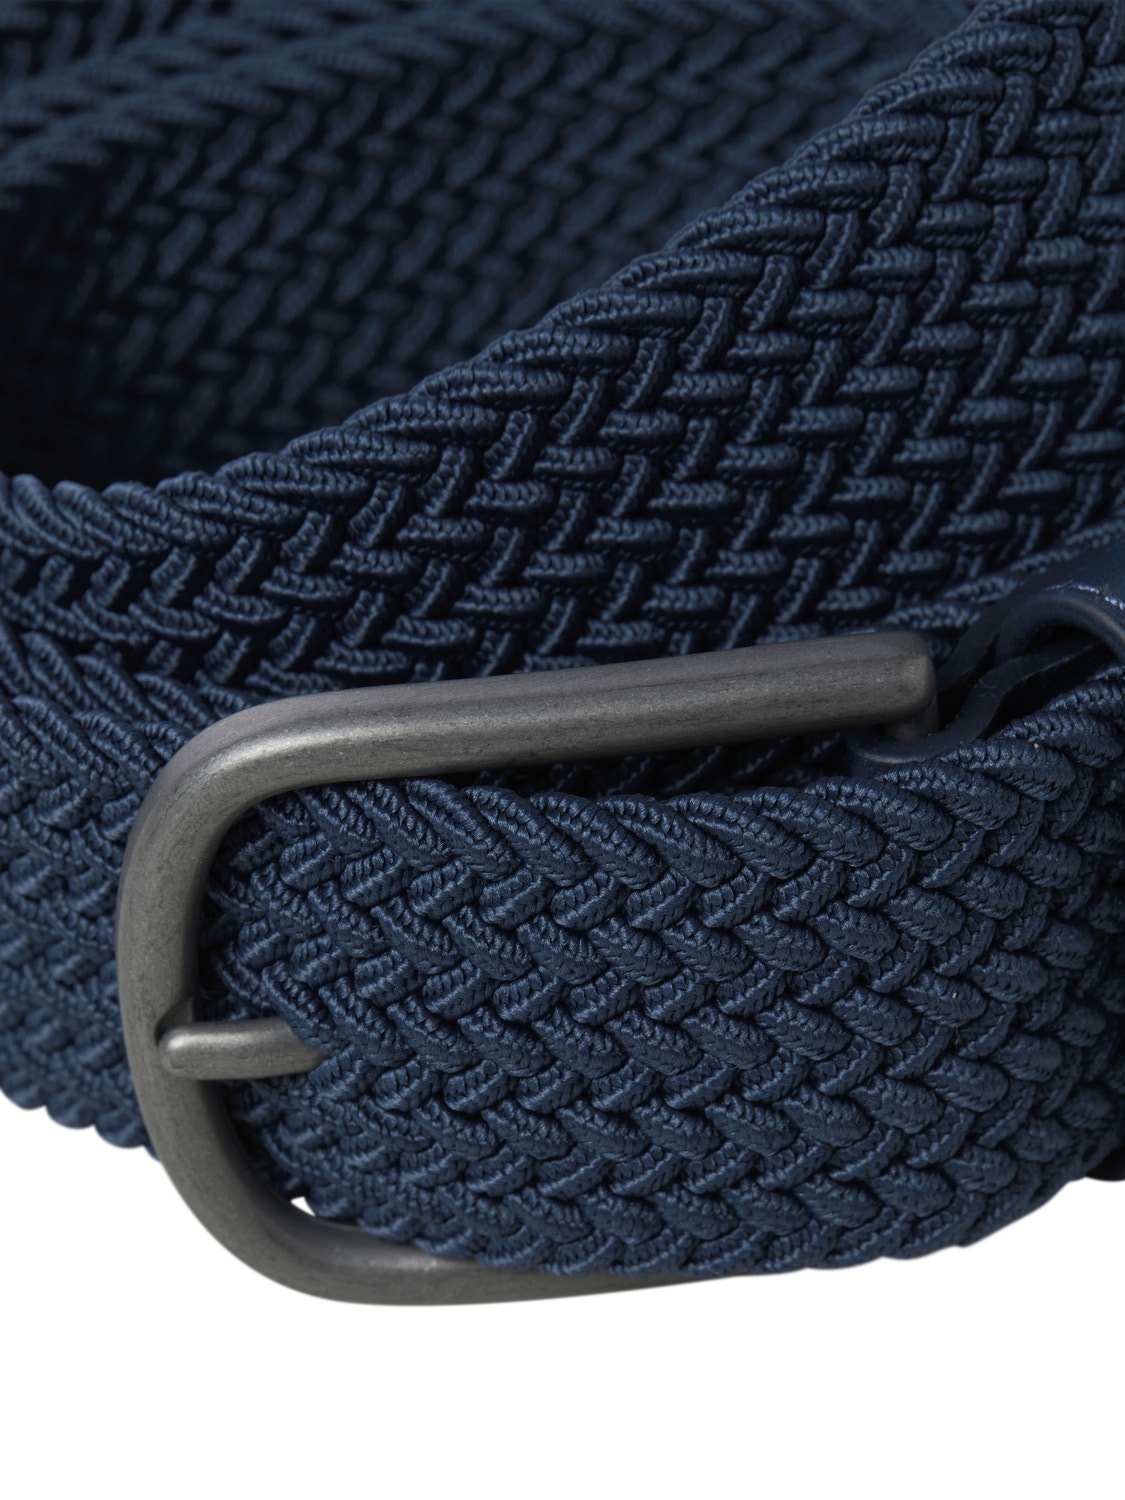 Jack & Jones Plus Size Polyester Belt -Ensign Blue - 12255013